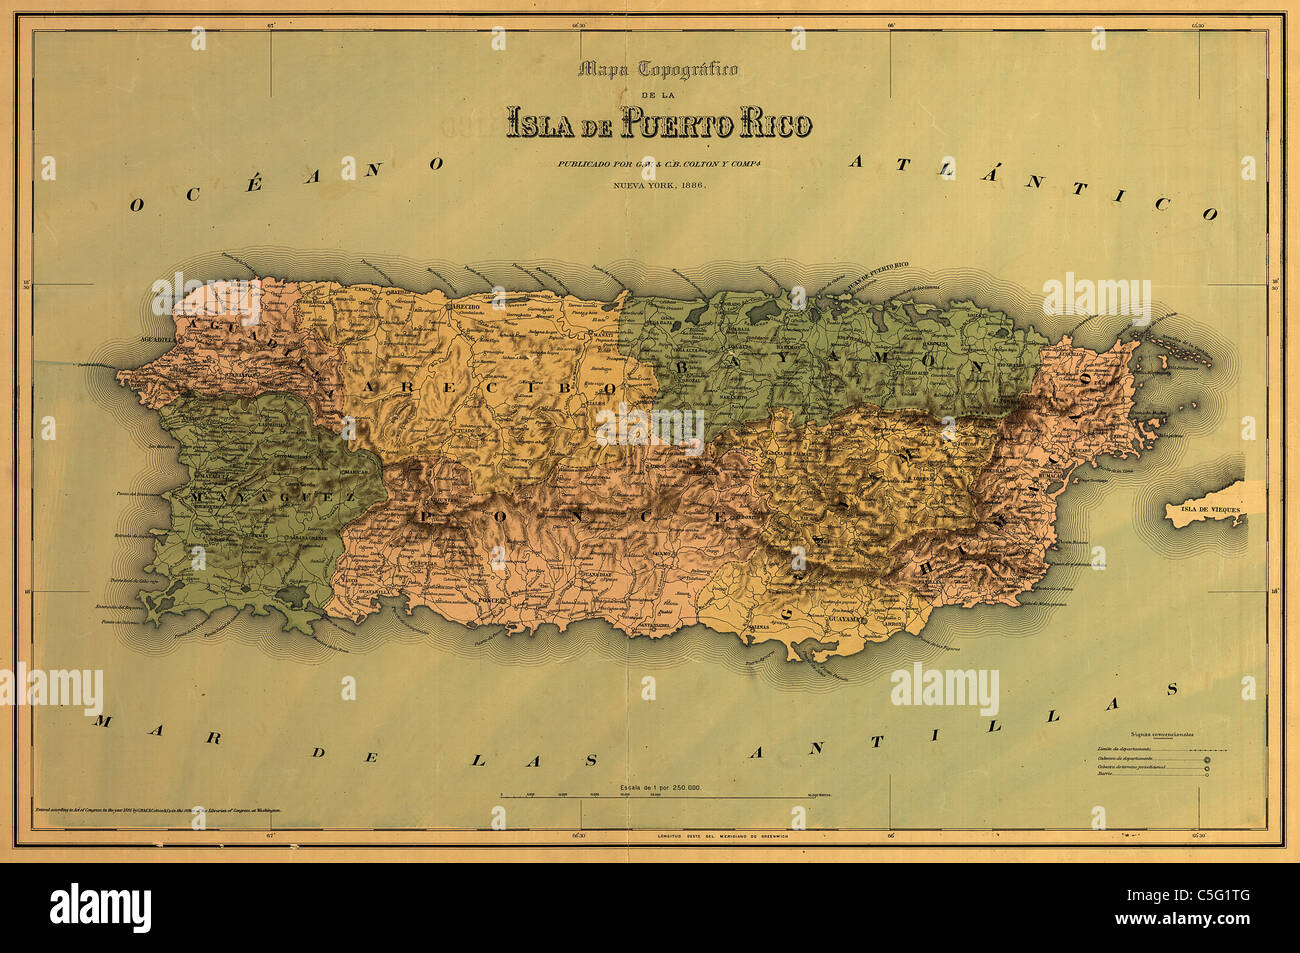 Mapa topográfico de la isla de Puerto Rico, 1866 - carta antiquaria d'epoca di John Colton Foto Stock